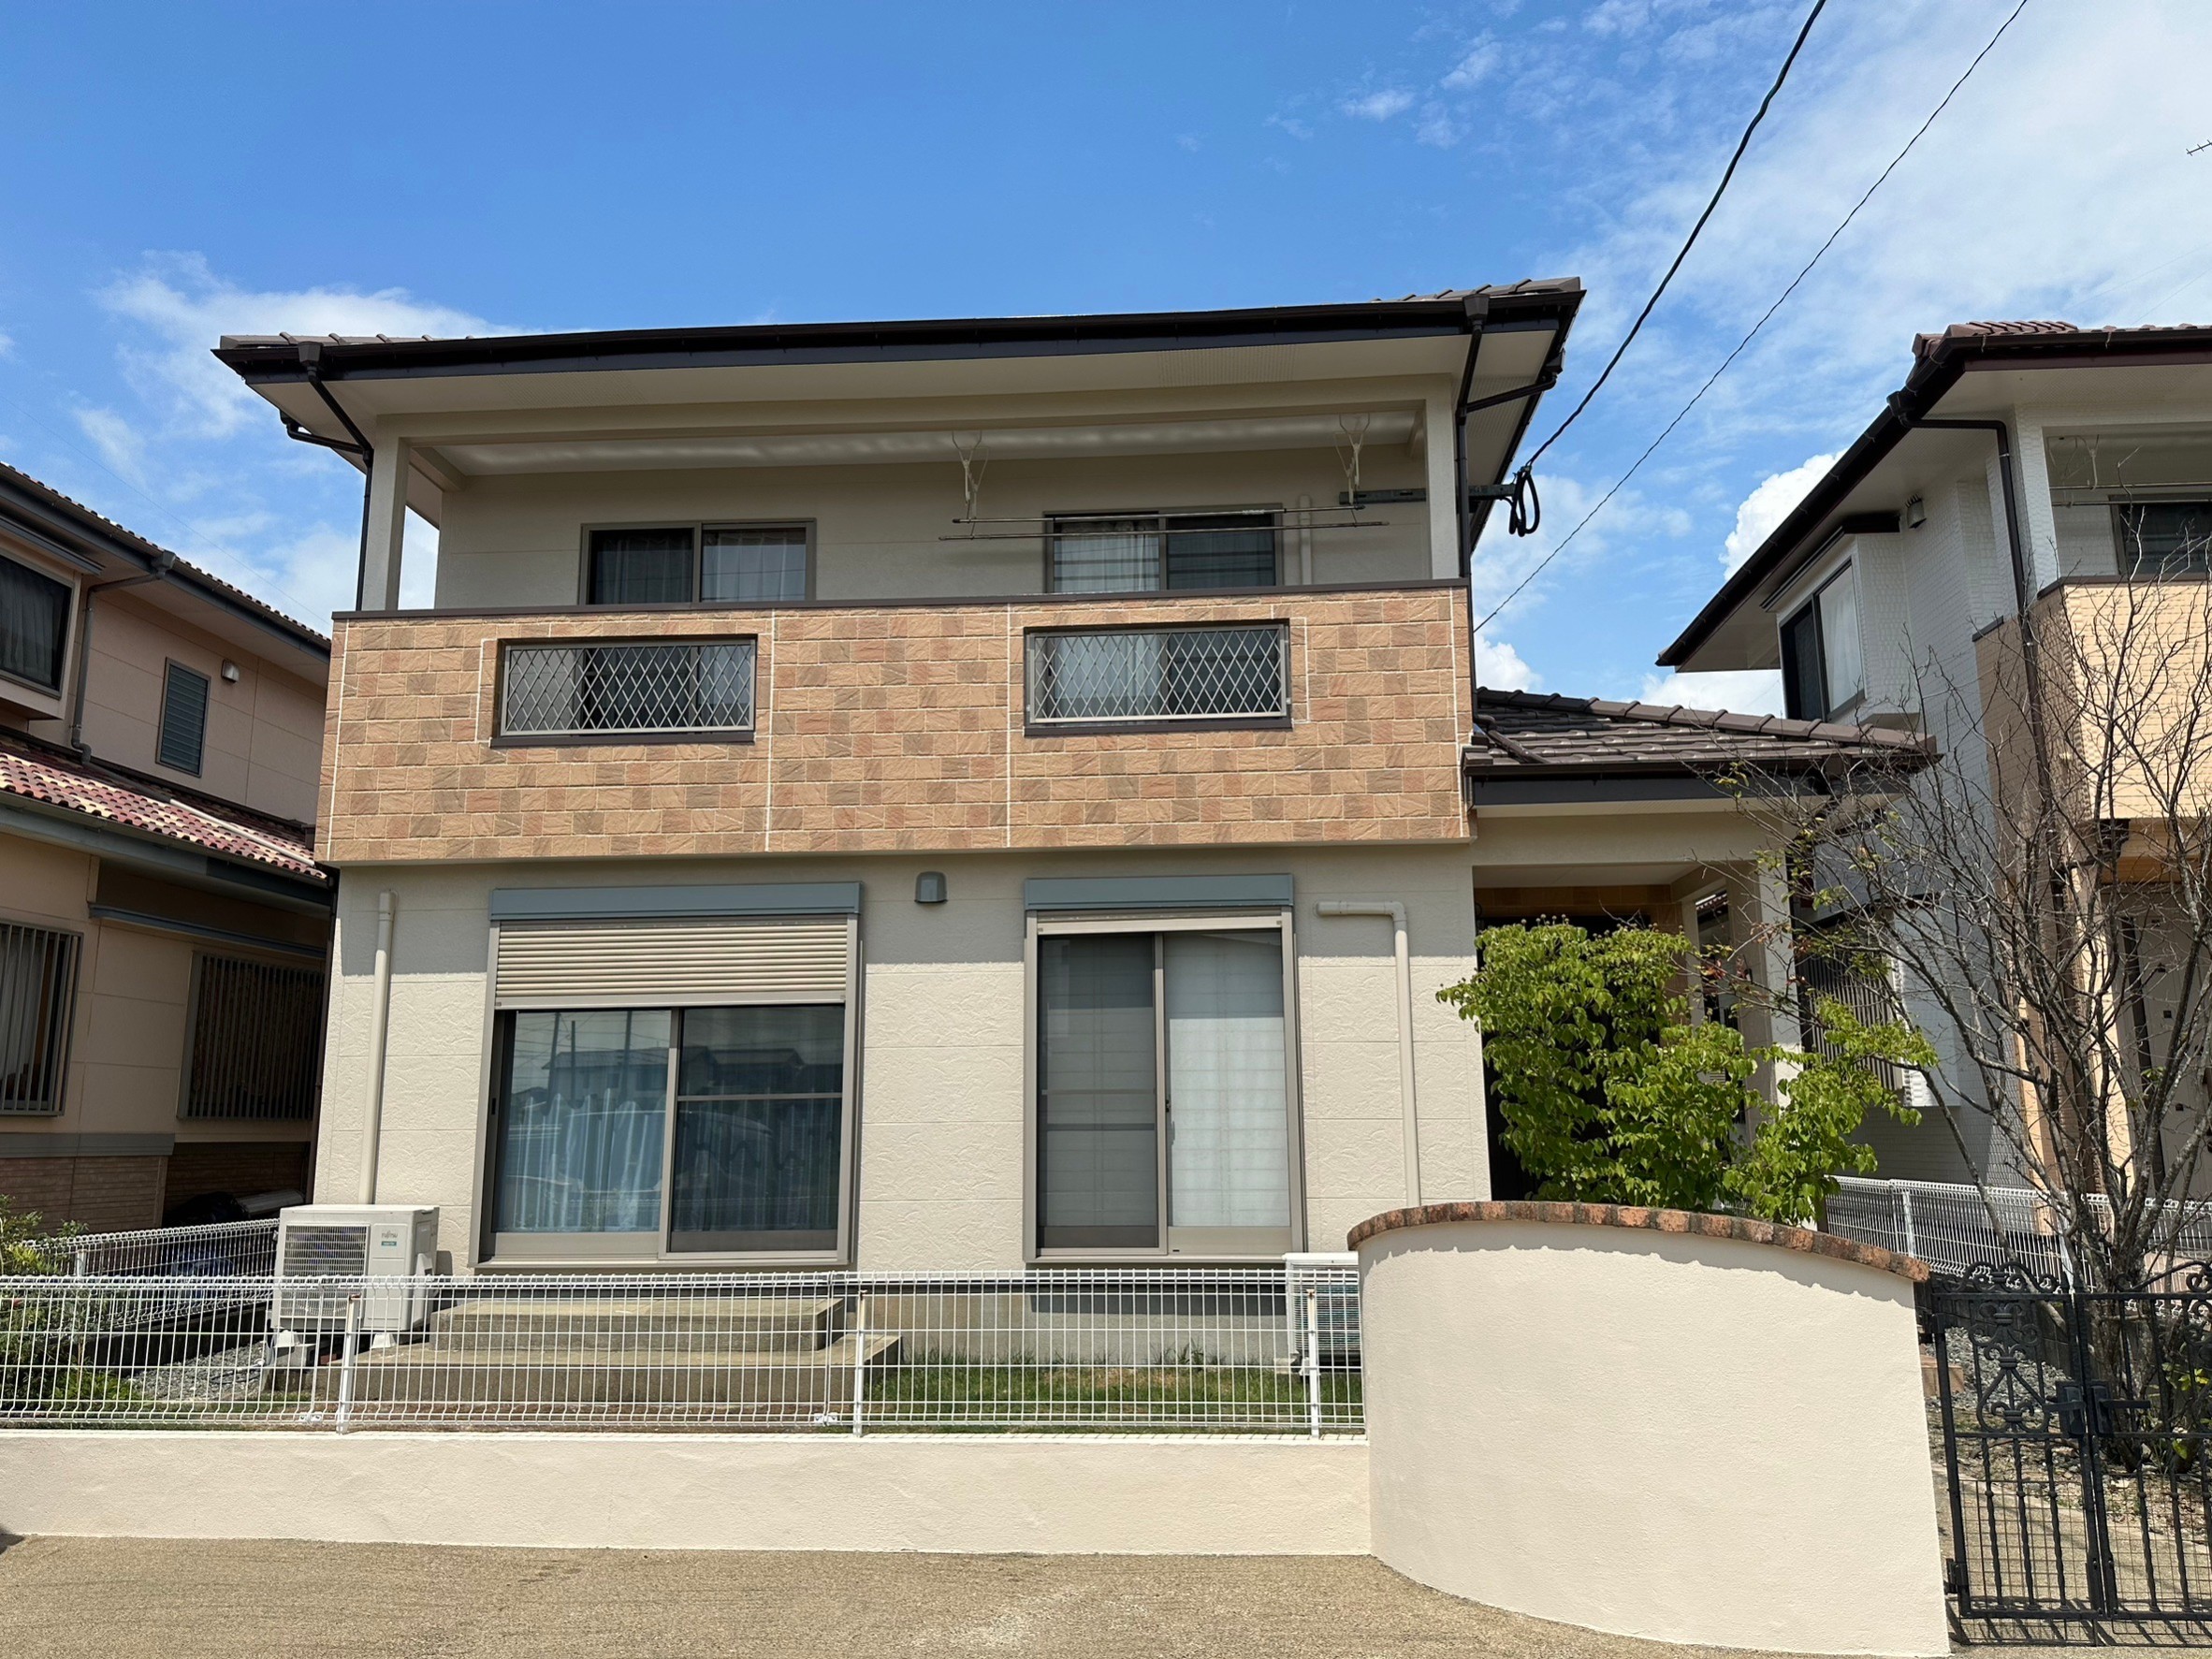 福岡県筑前町東小田のS様邸で経年劣化によりチョーキングや色褪せが発生していた外壁を塗り替えて新築の様に仕上げました。8/17完成です。【ホームページより】